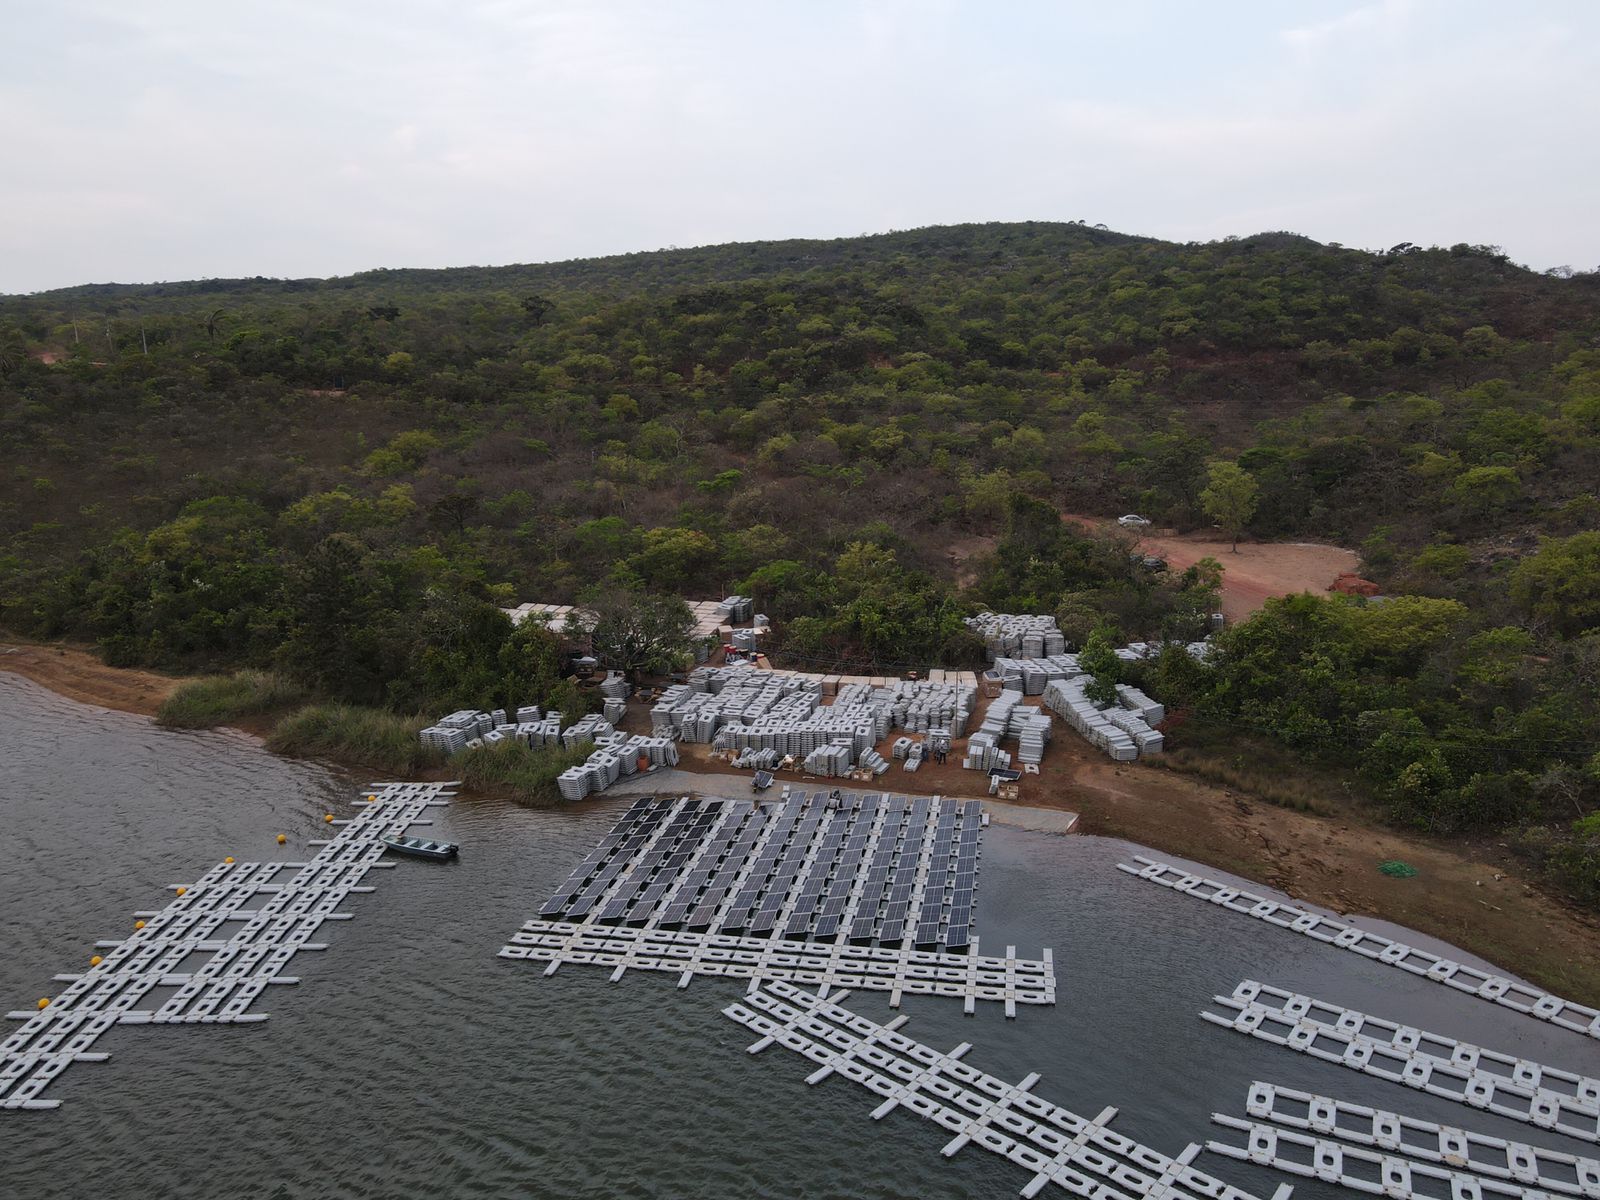 Inicio da instalação de 1,2 MWp de usina solar flutuante da F2B na PCH Santa Marta em Minas Gerais.